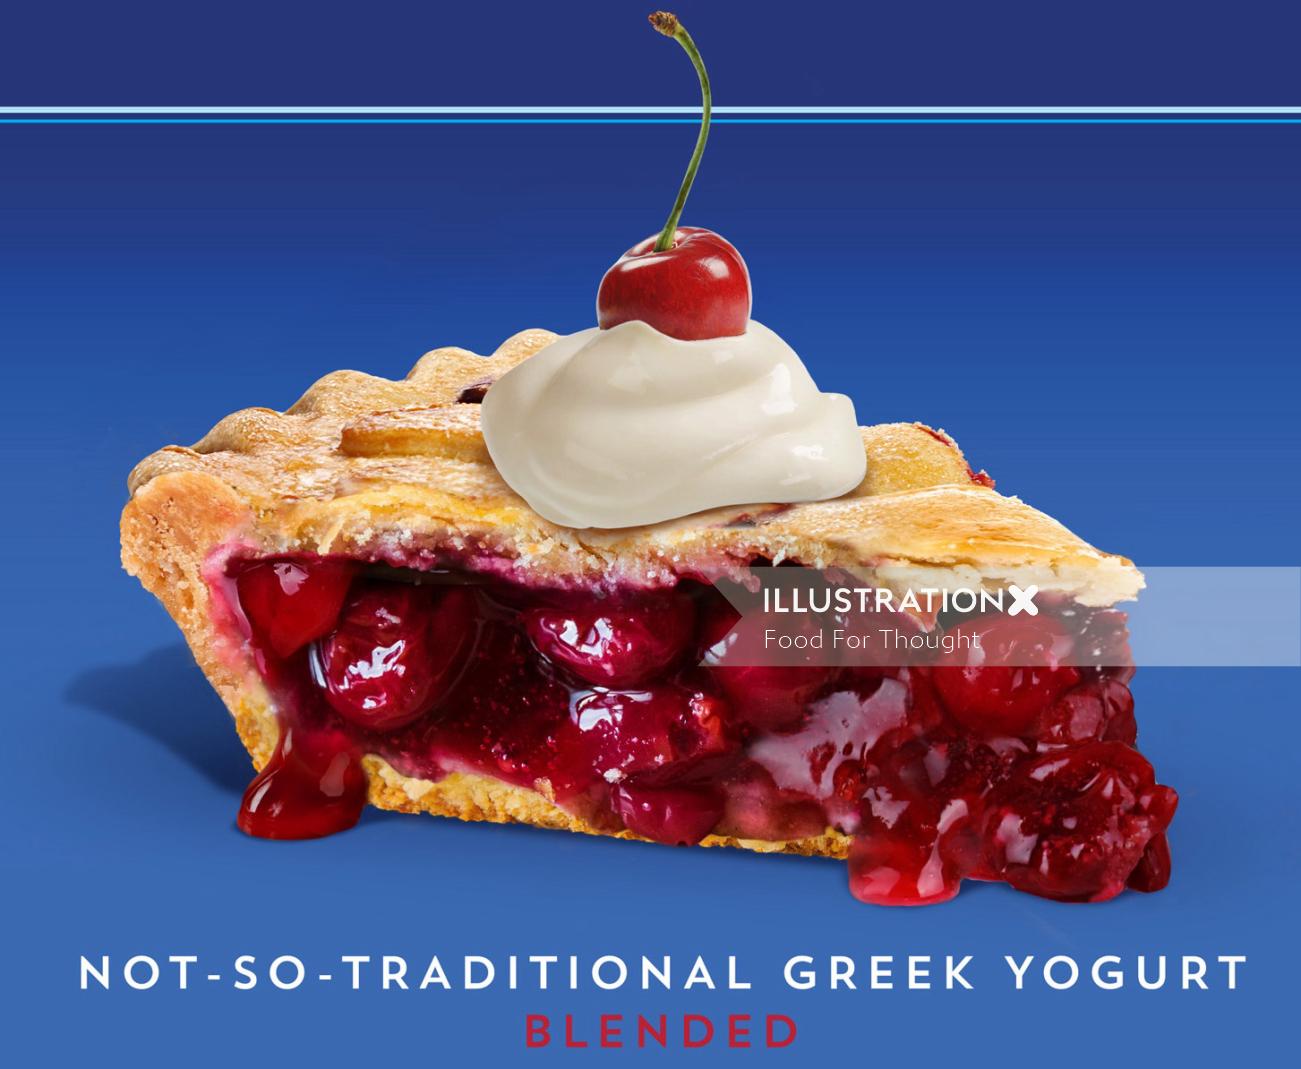 Image de tarte aux cerises pour la gamme de yaourts grecs Oikos